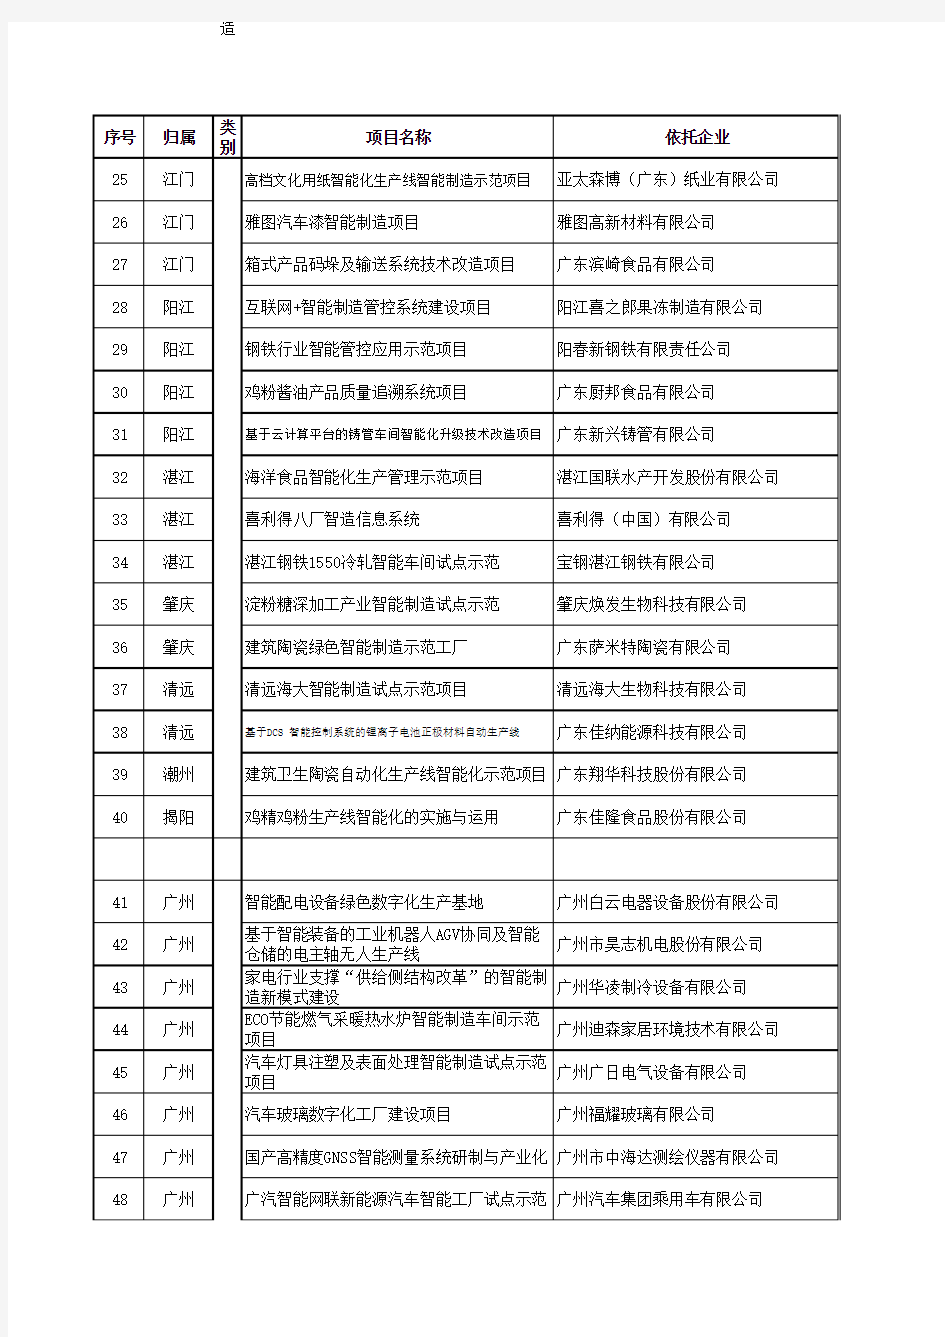 2018年广东省智能制造试点示范项目名单